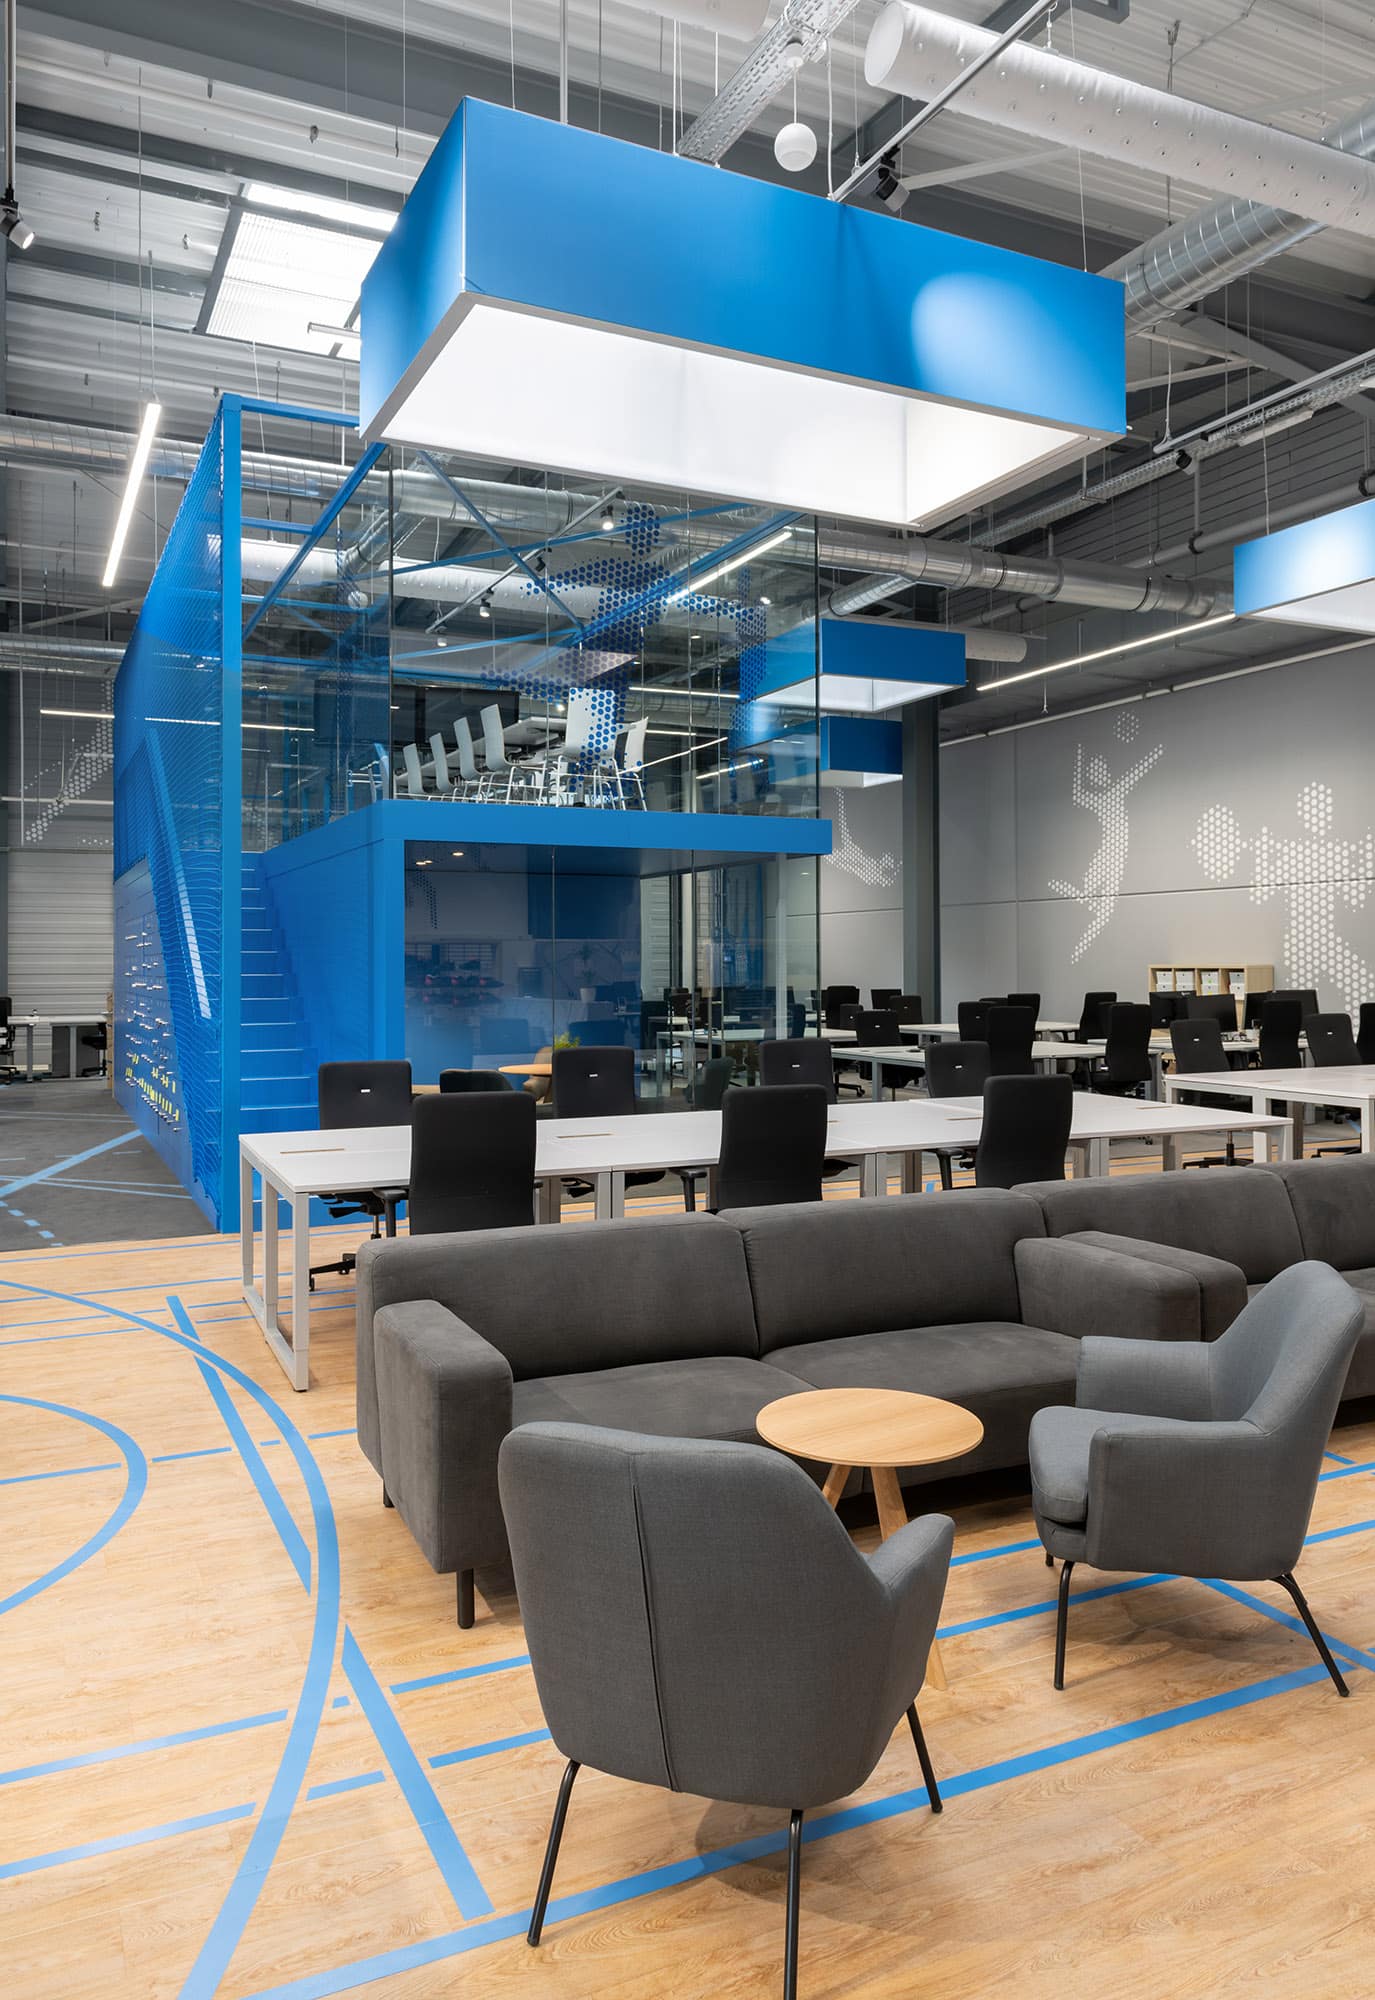 Der BlueCube ist das zentrale Element im großen Workspace: Für Team-Meetings oben und konzentriertes, abgeschottetes Arbeiten unten